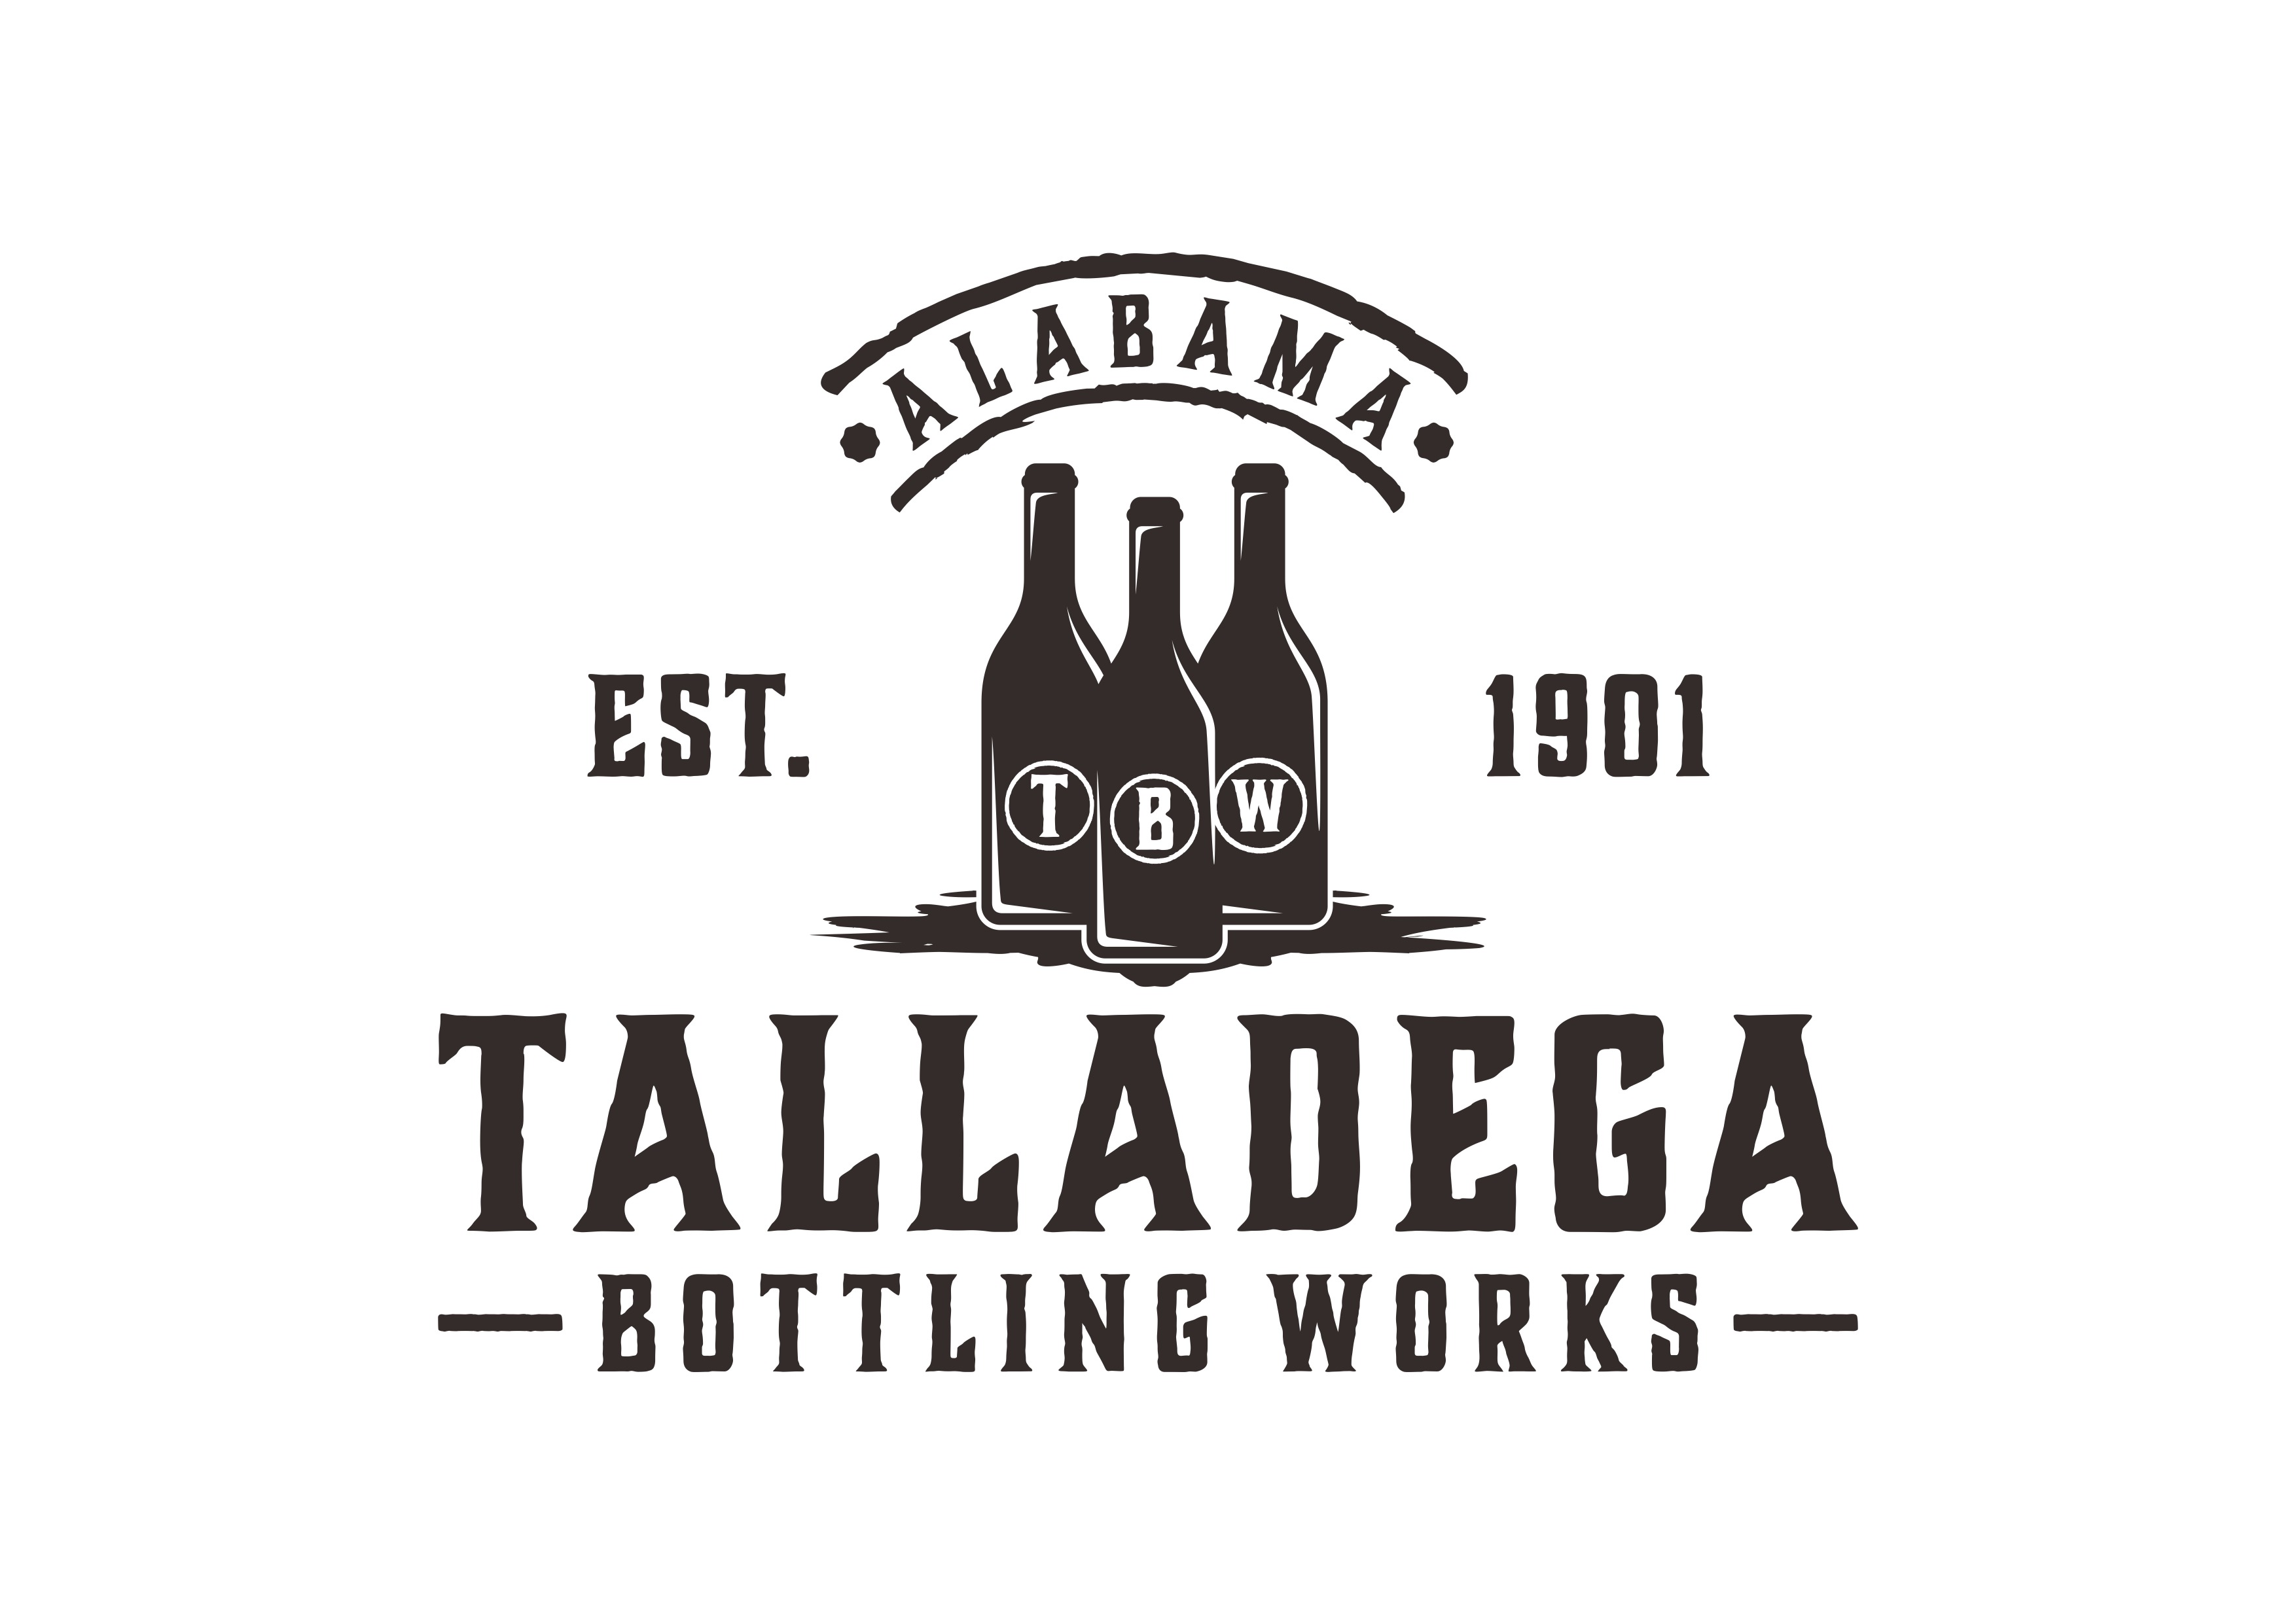 Talladega Bottling Works